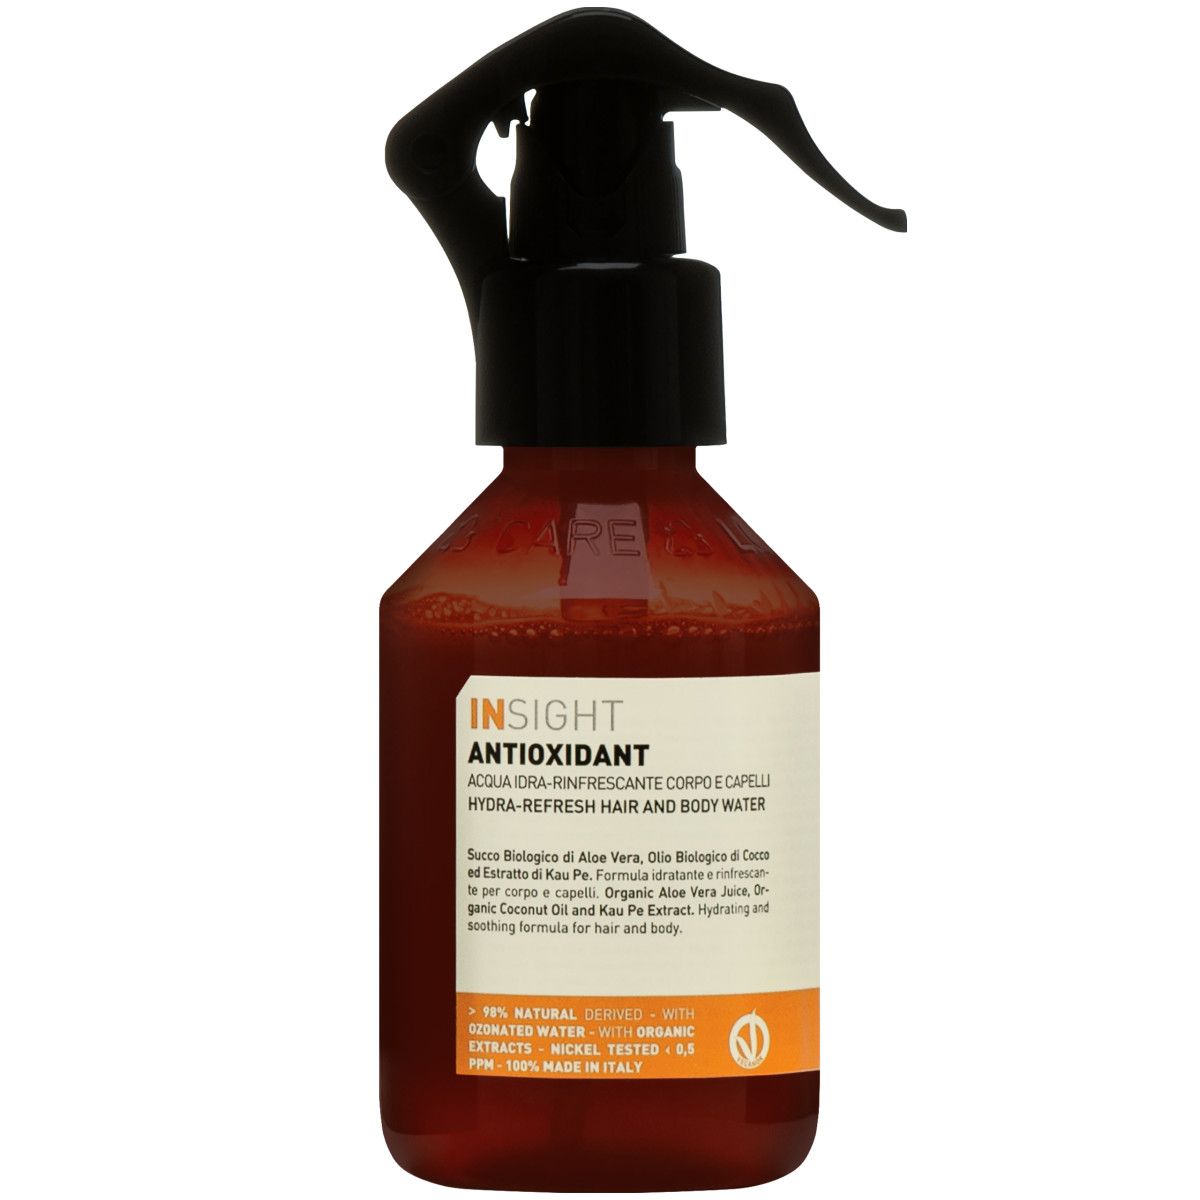 Insight Antioxidant - orzeźwiająca mgiełka do włosów i ciała, 150ml